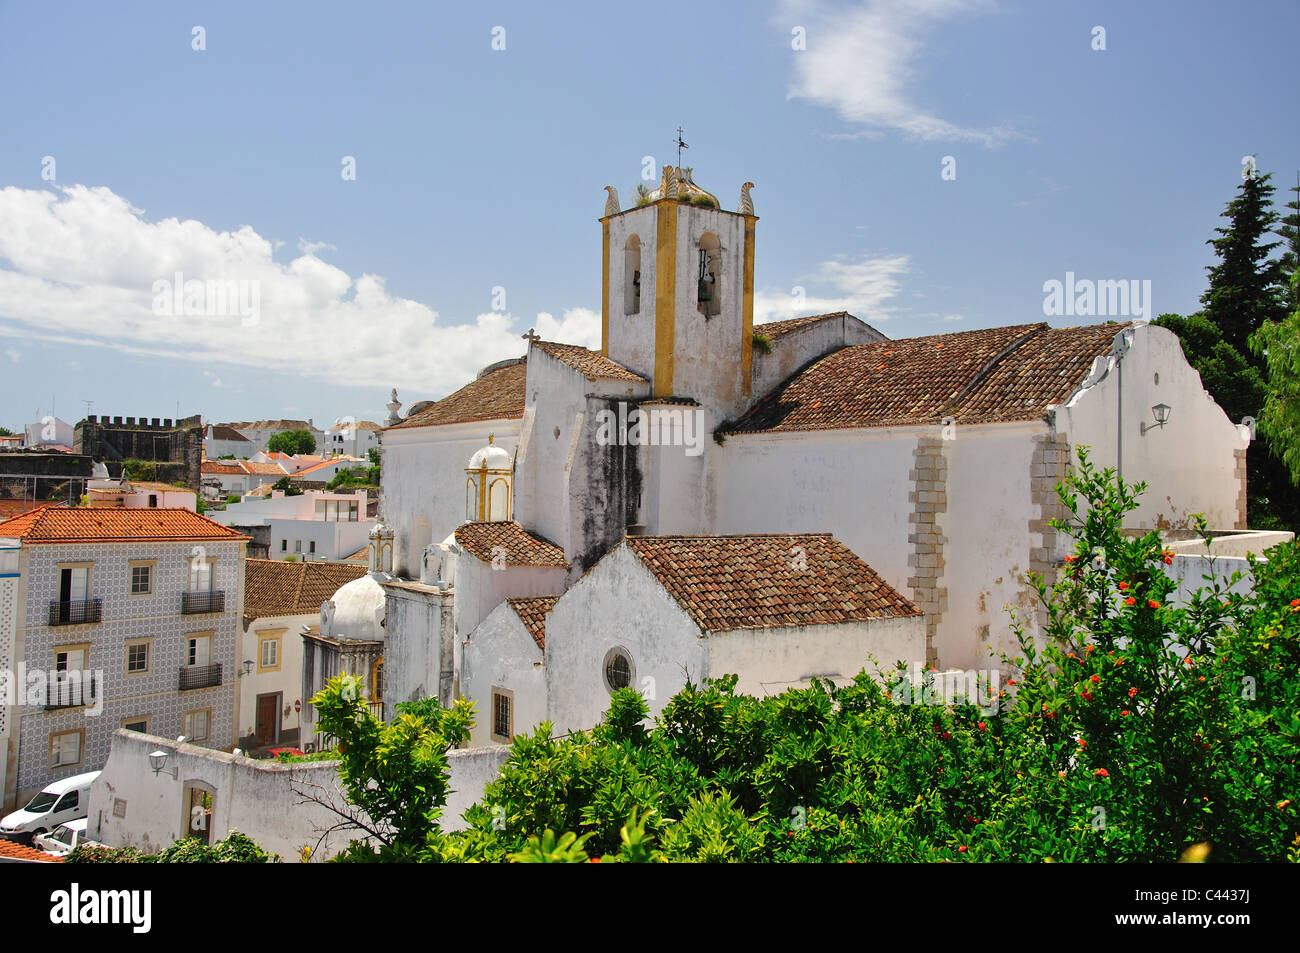 Igreja de Santiago from Castelo, Tavira, Algarve Region, Portugal Stock Photo